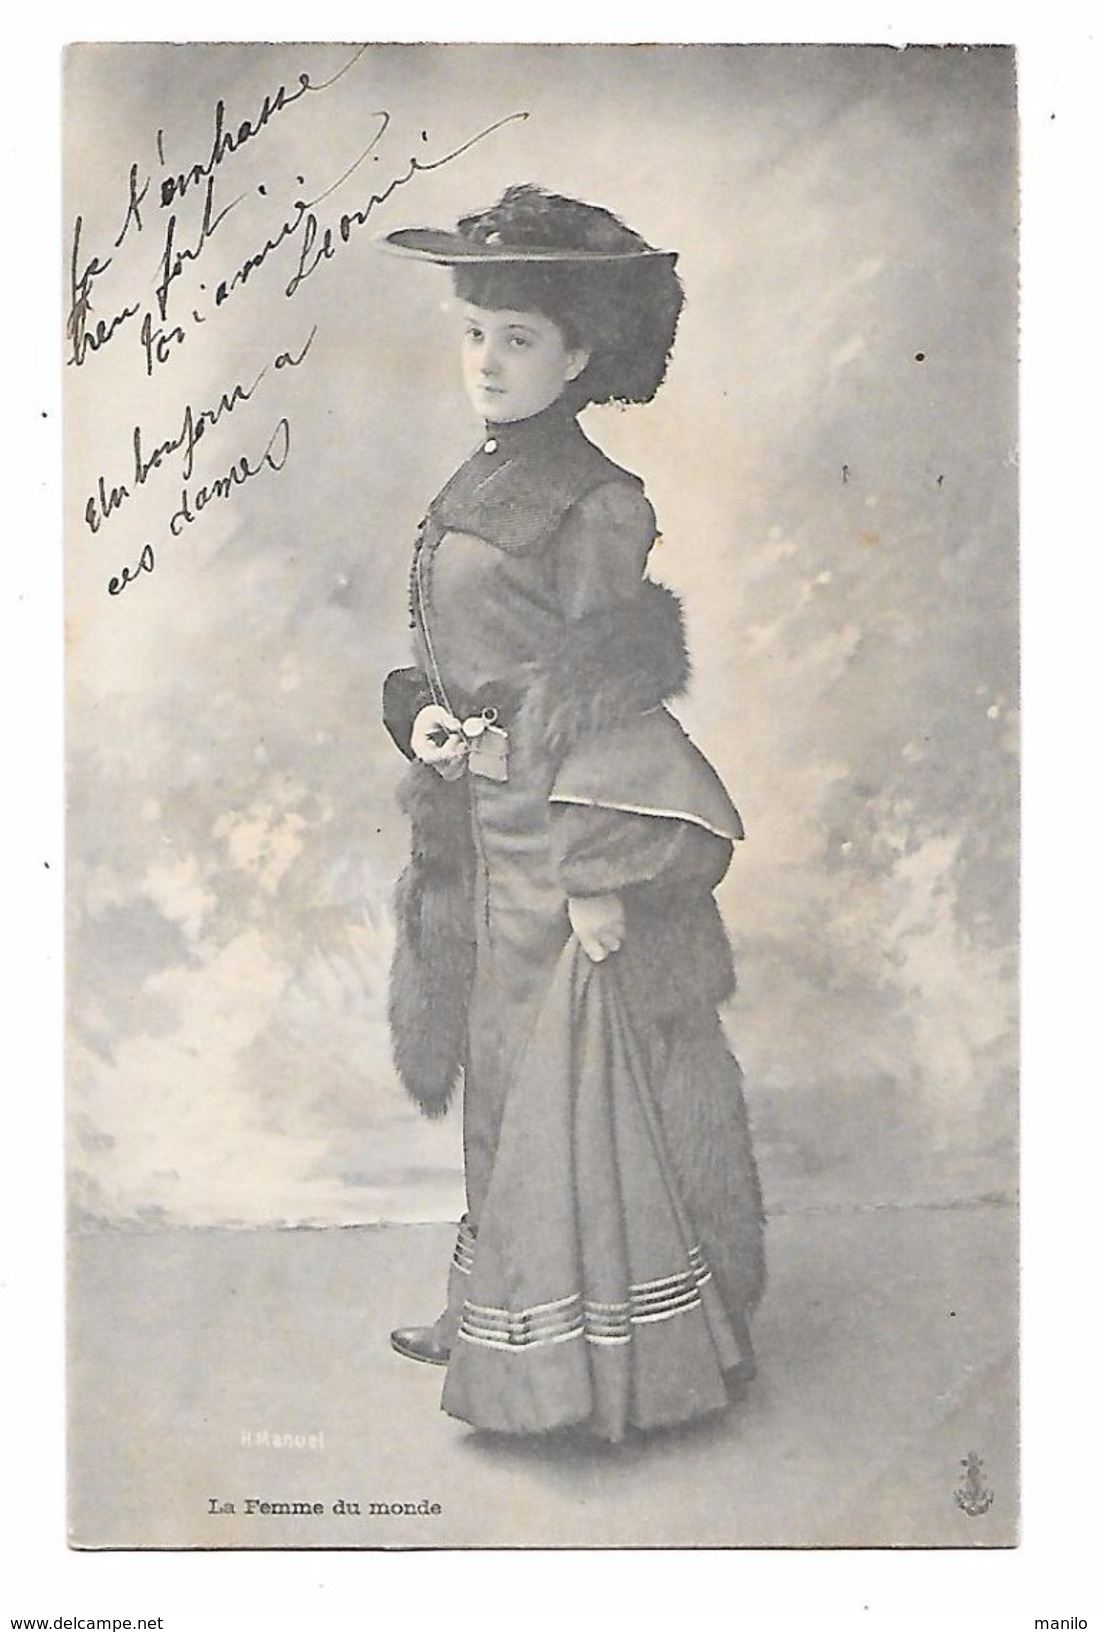 MODE - JEUNE FEMME DU MONDE A LA MODE EN 1907 - Renard, Bourse En Argent, Montre    Photo H. MANUEL - Mode